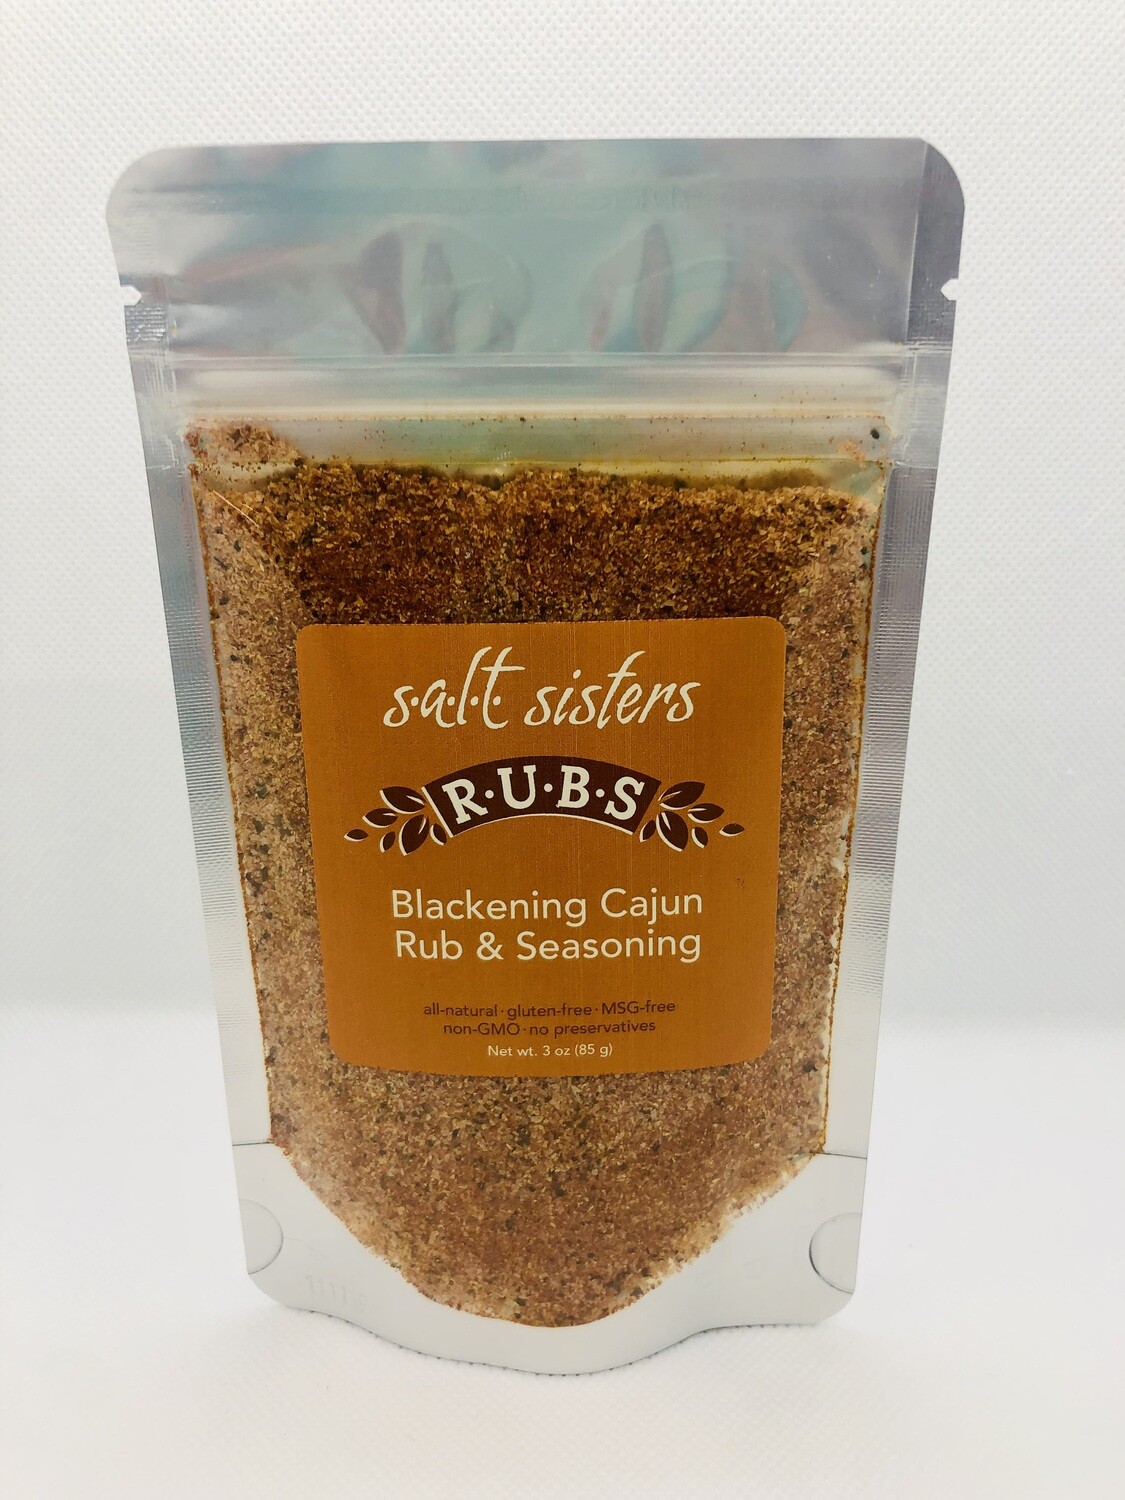 Blackening Cajun Rub & Seasoning